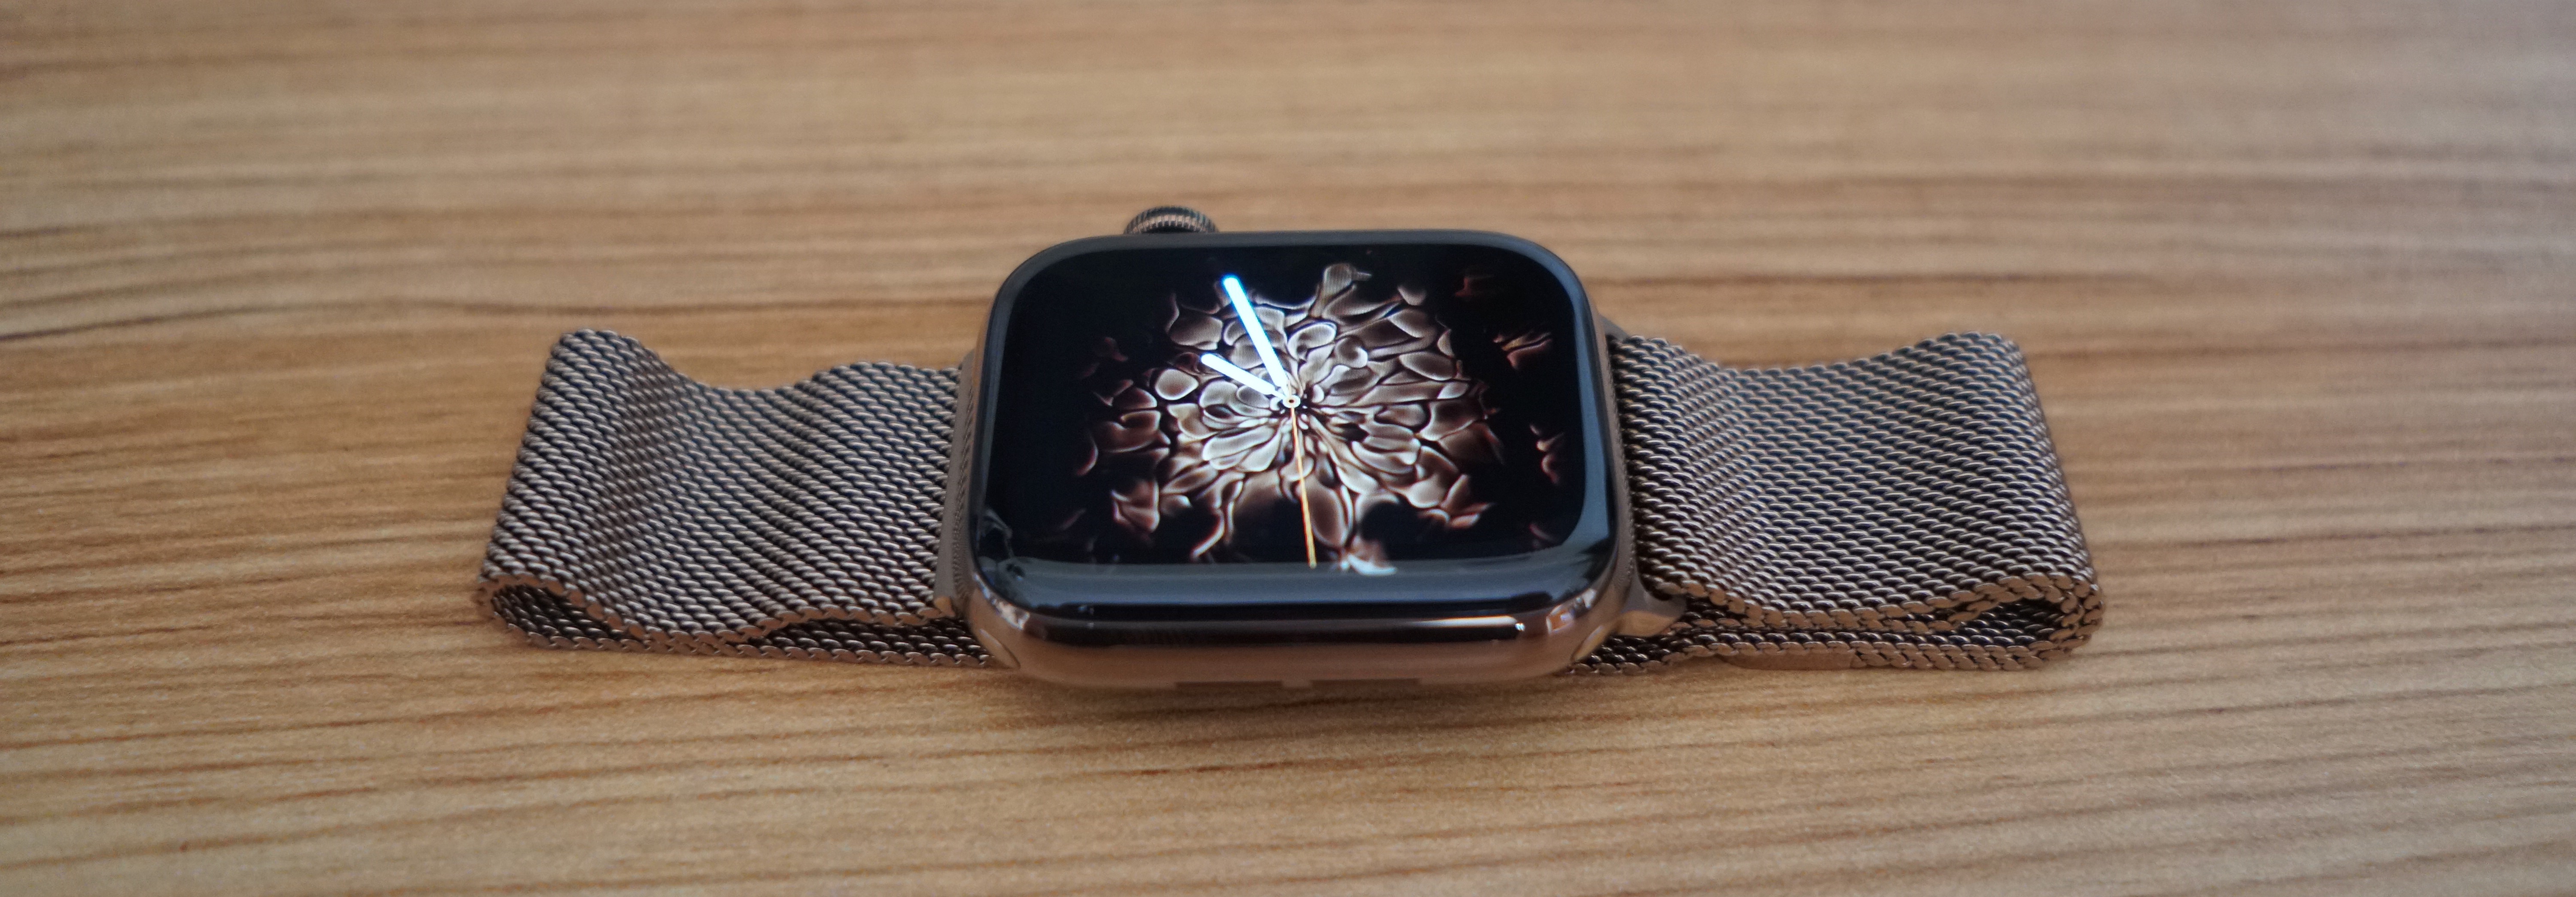 apple watch s4 40mm silver